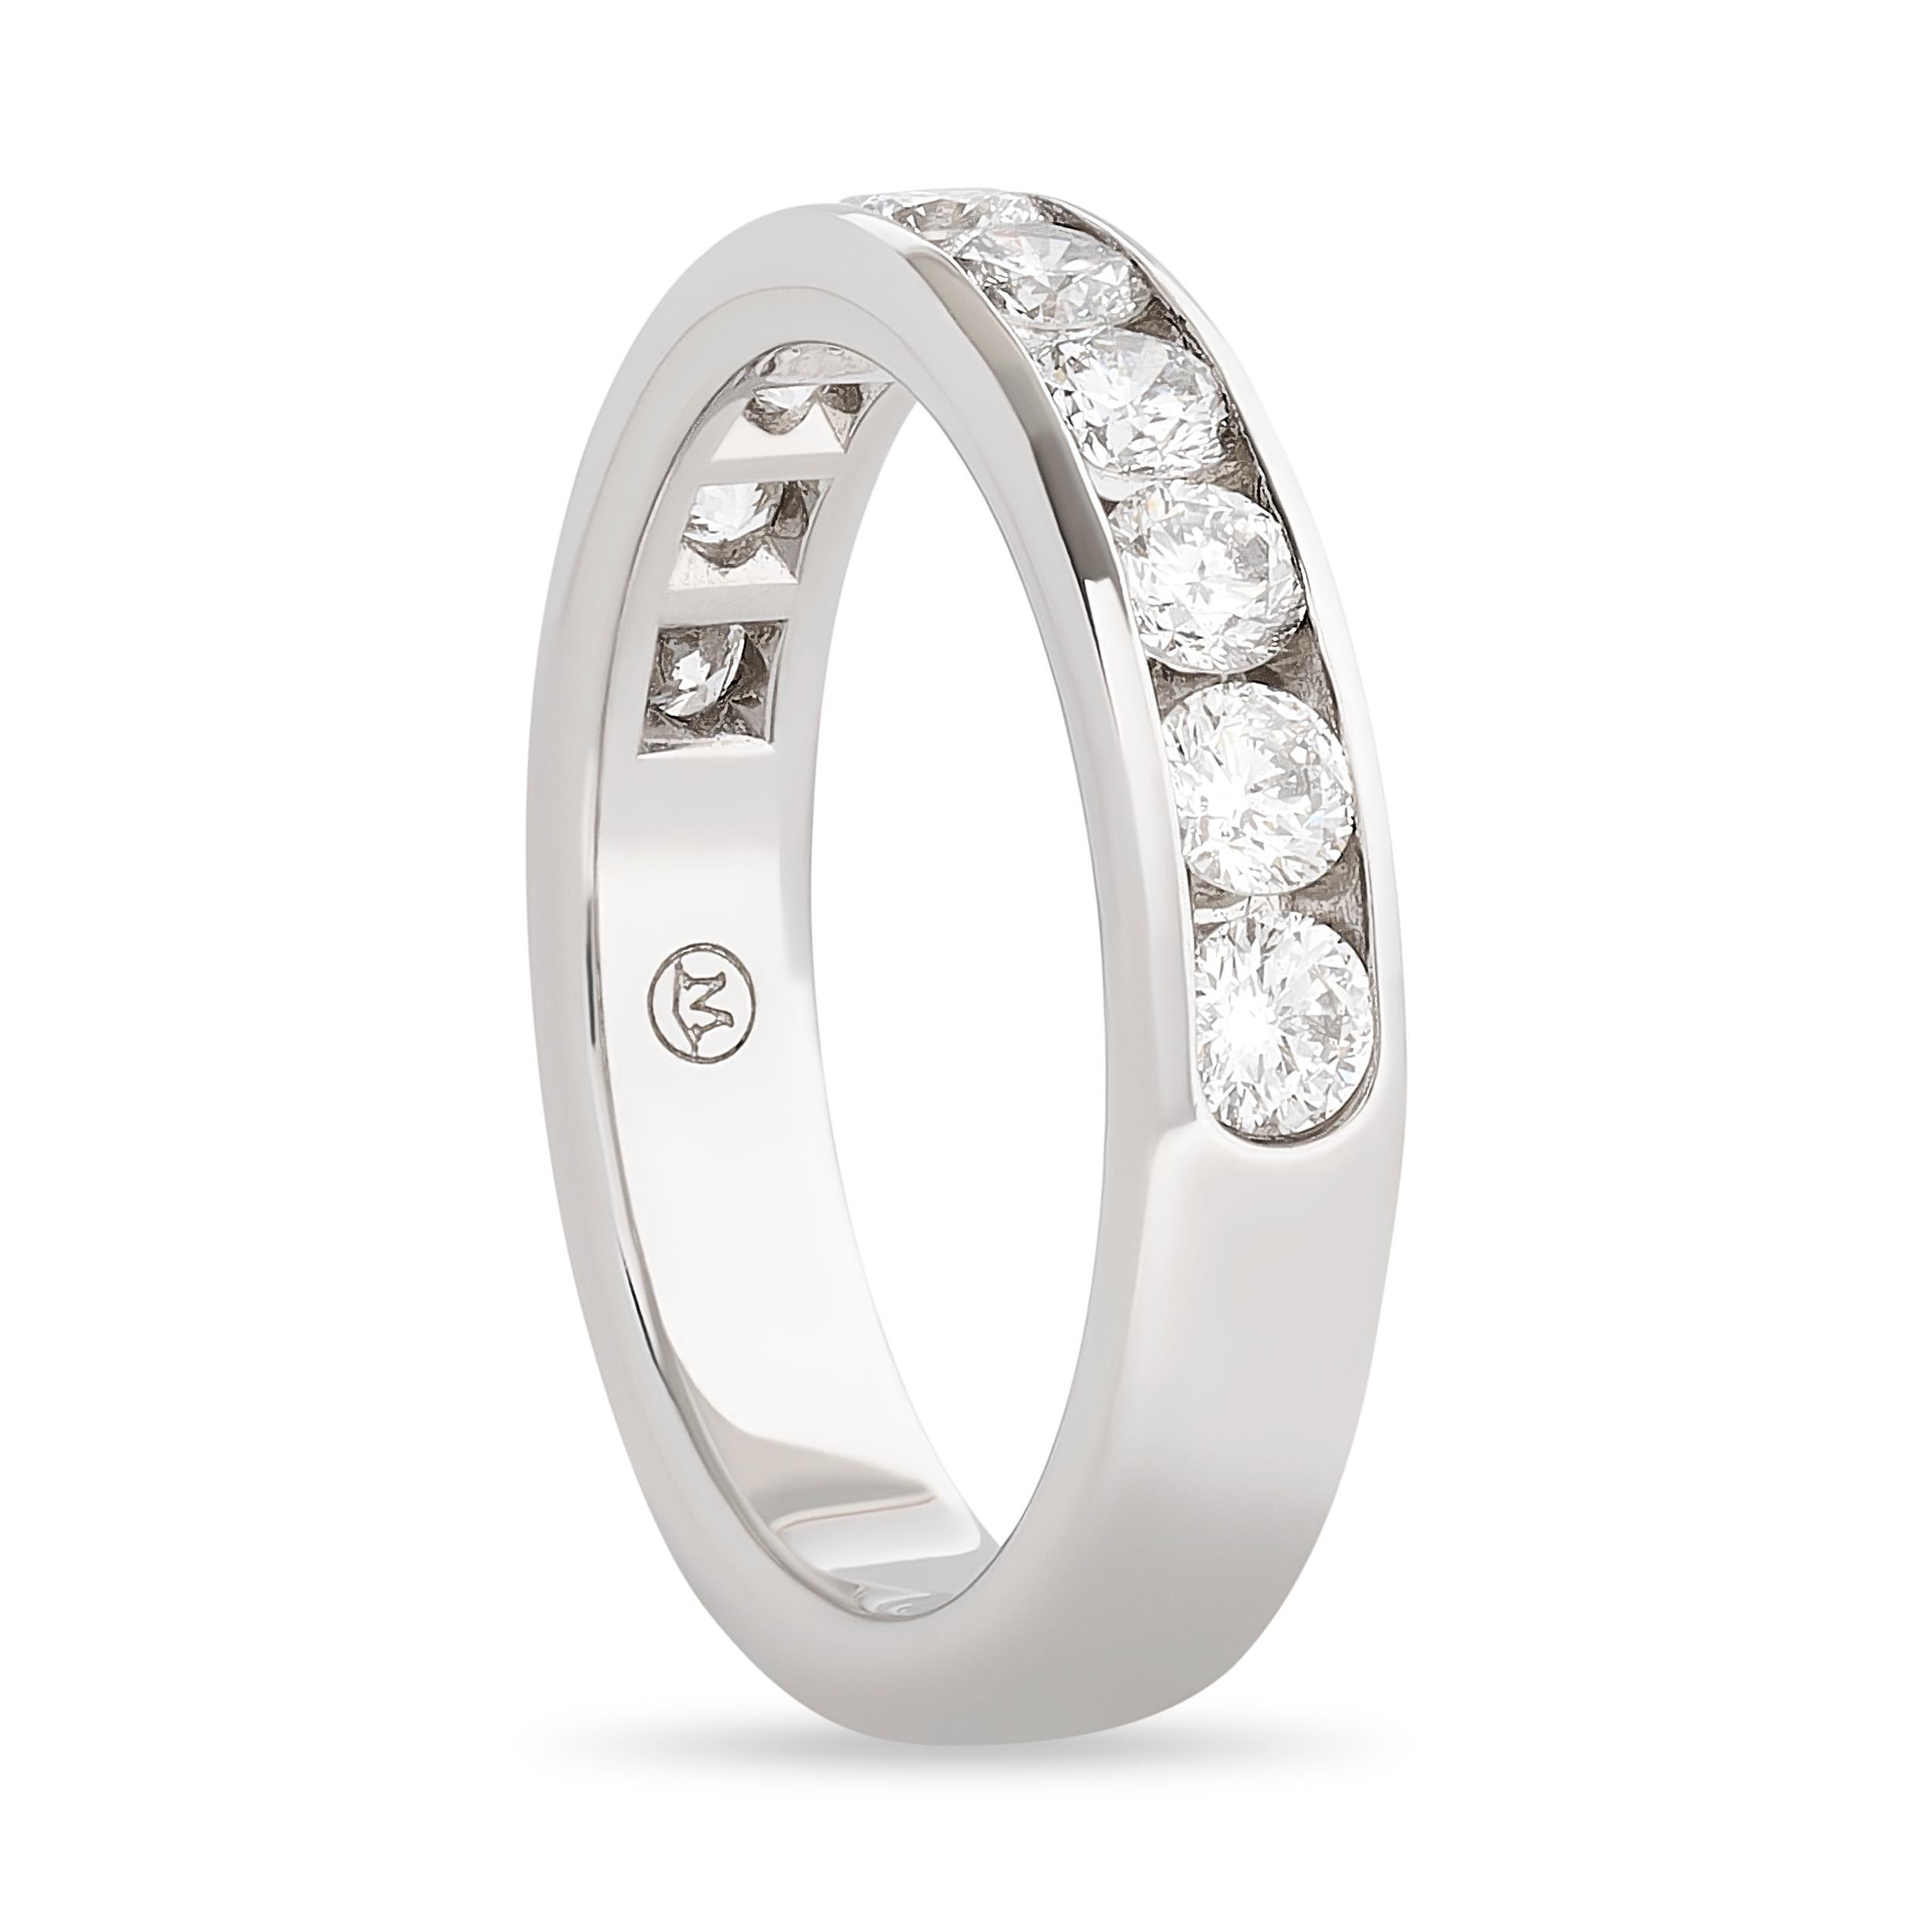 Ein atemberaubendes Movado Band mit rundem Diamanten in Kanalfassung und klassischer Schönheit.

Dieses Movado-Diamantband ist mit 10 runden Diamanten im Brillantschliff gefasst. Insgesamt sind es etwa 1,00 Karat. Die Diamanten haben die Farbe F-G